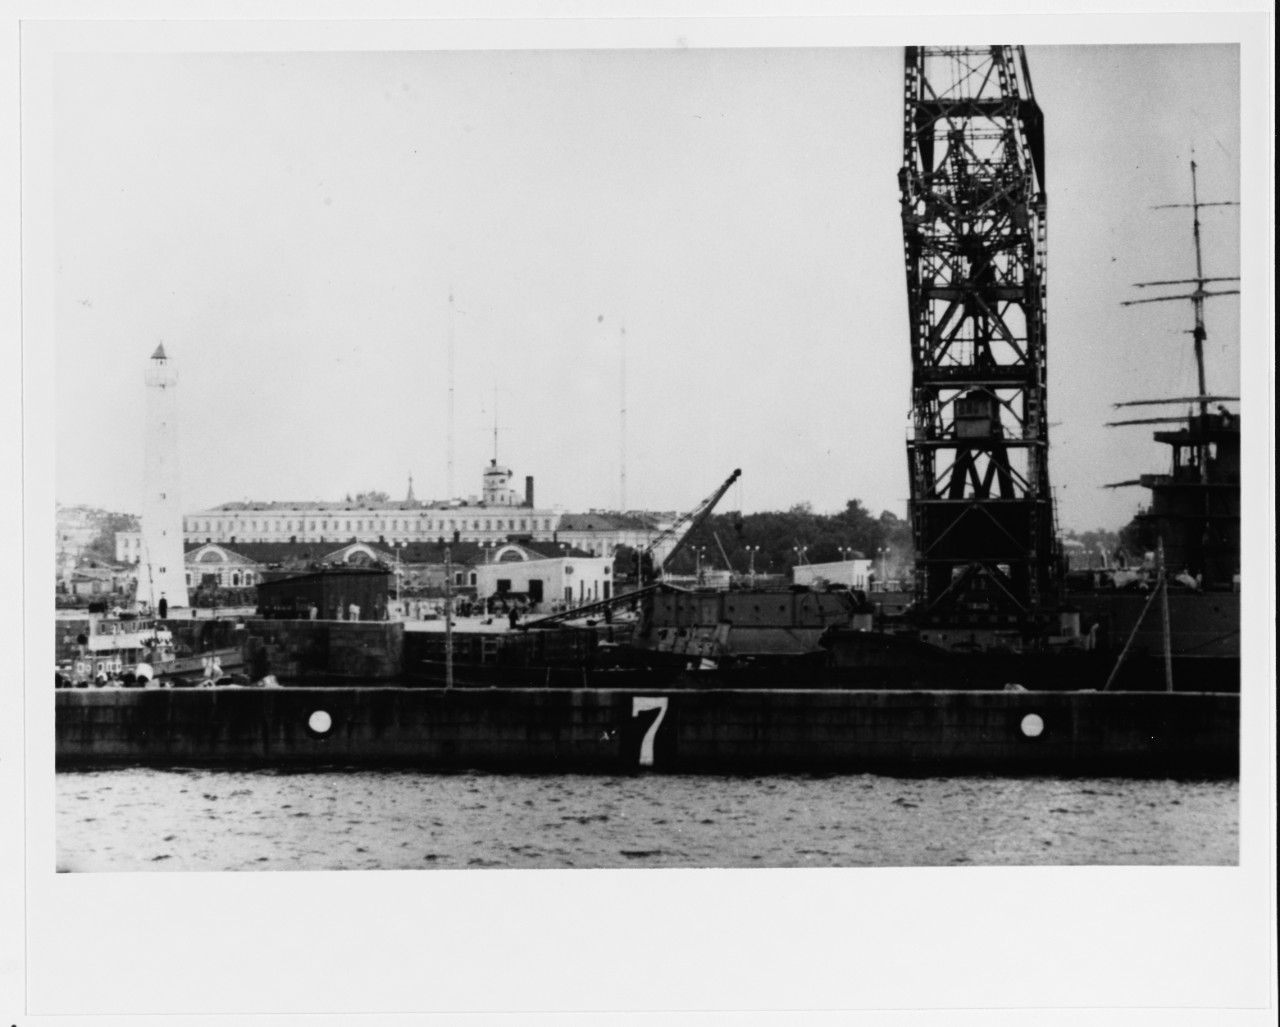 OKTYABRSKAYA REVOLUTSIYA (Soviet Battleship, 1911-1959)